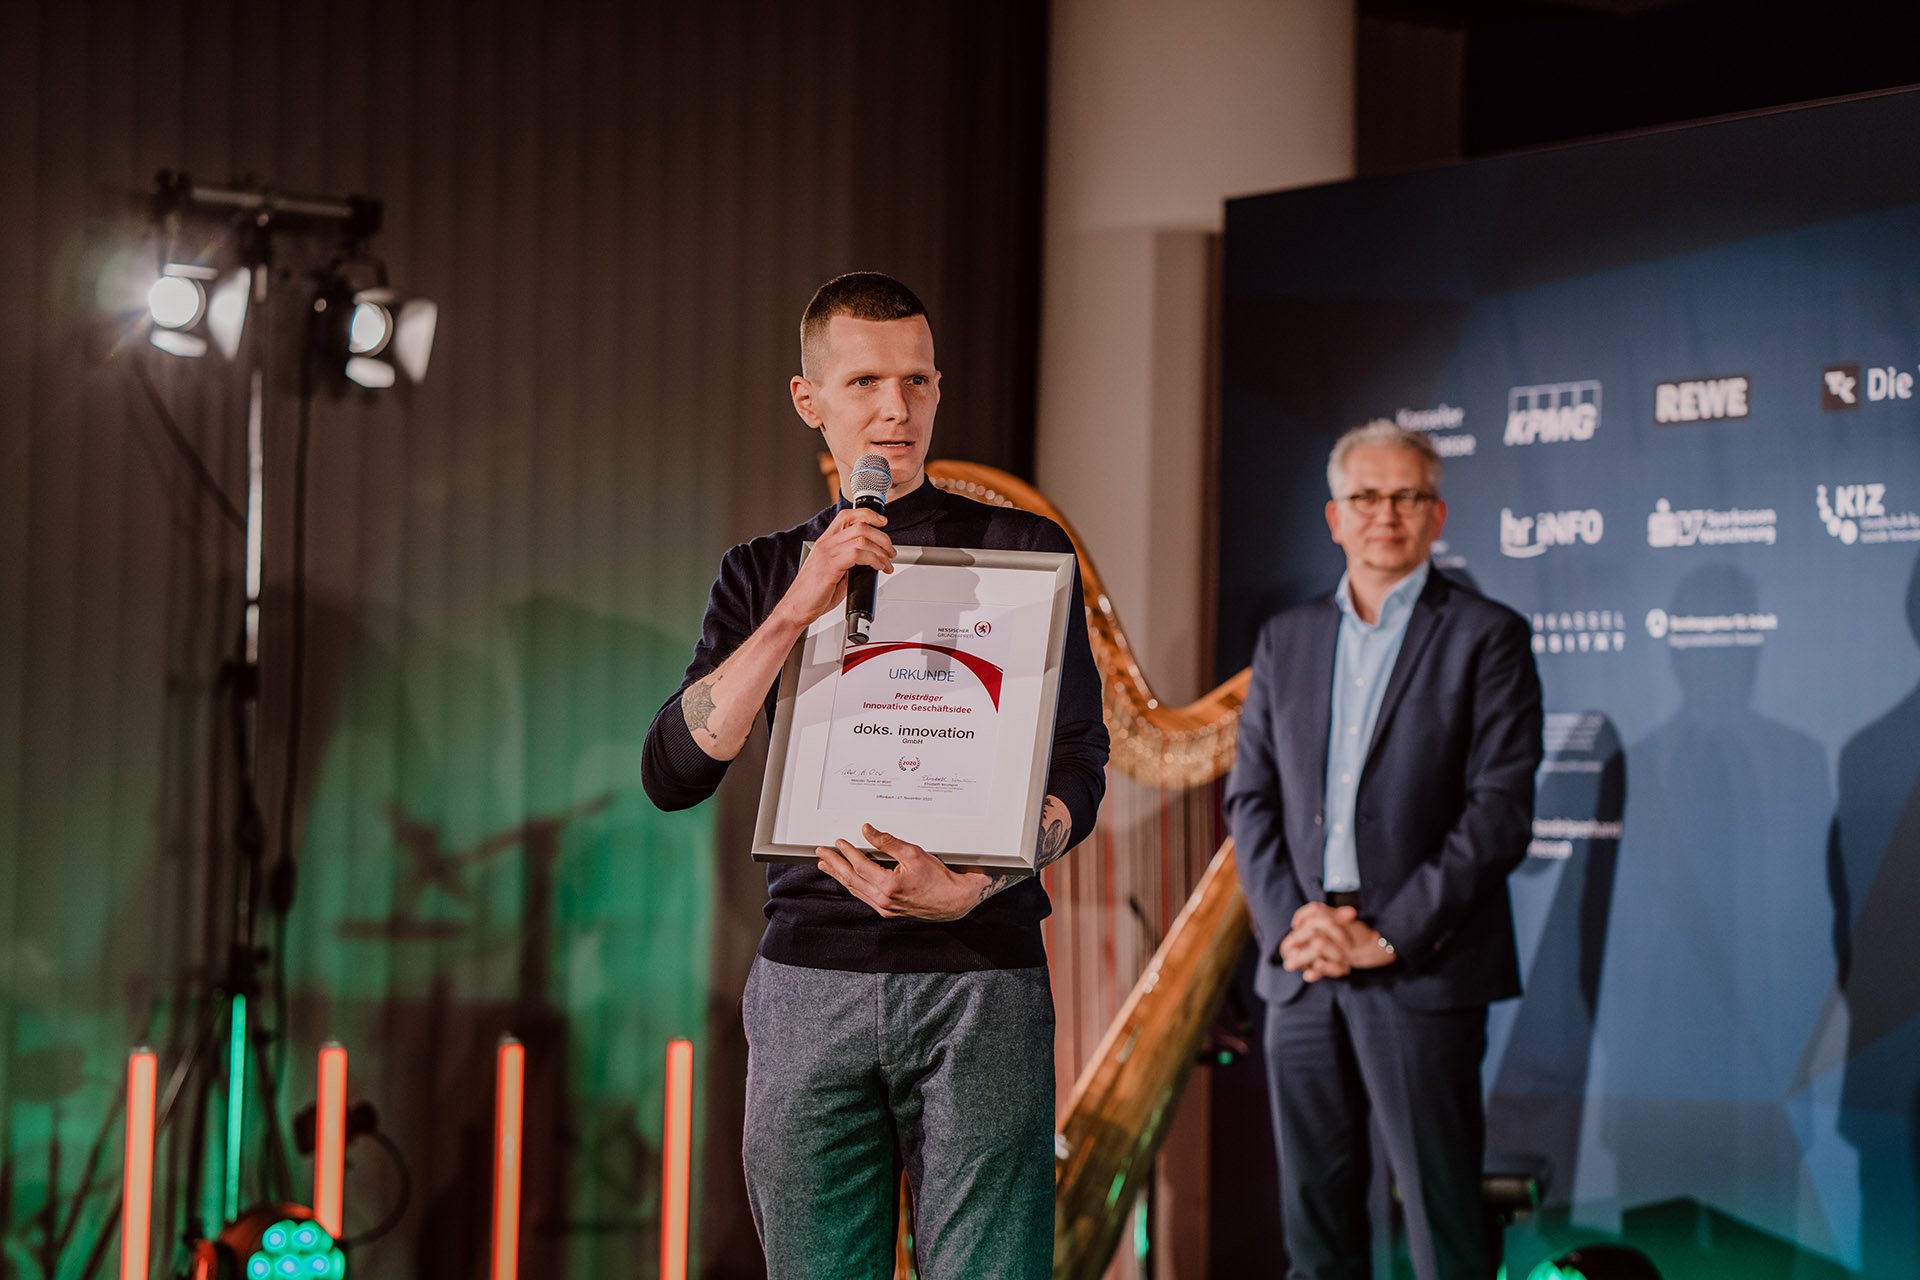 Wirtschaftsminister Tarek Al-Wazir überreichte den Hessischen Gründerpreis in der Kategorie "Innovative Geschäftsidee"an Doks.Innovation.